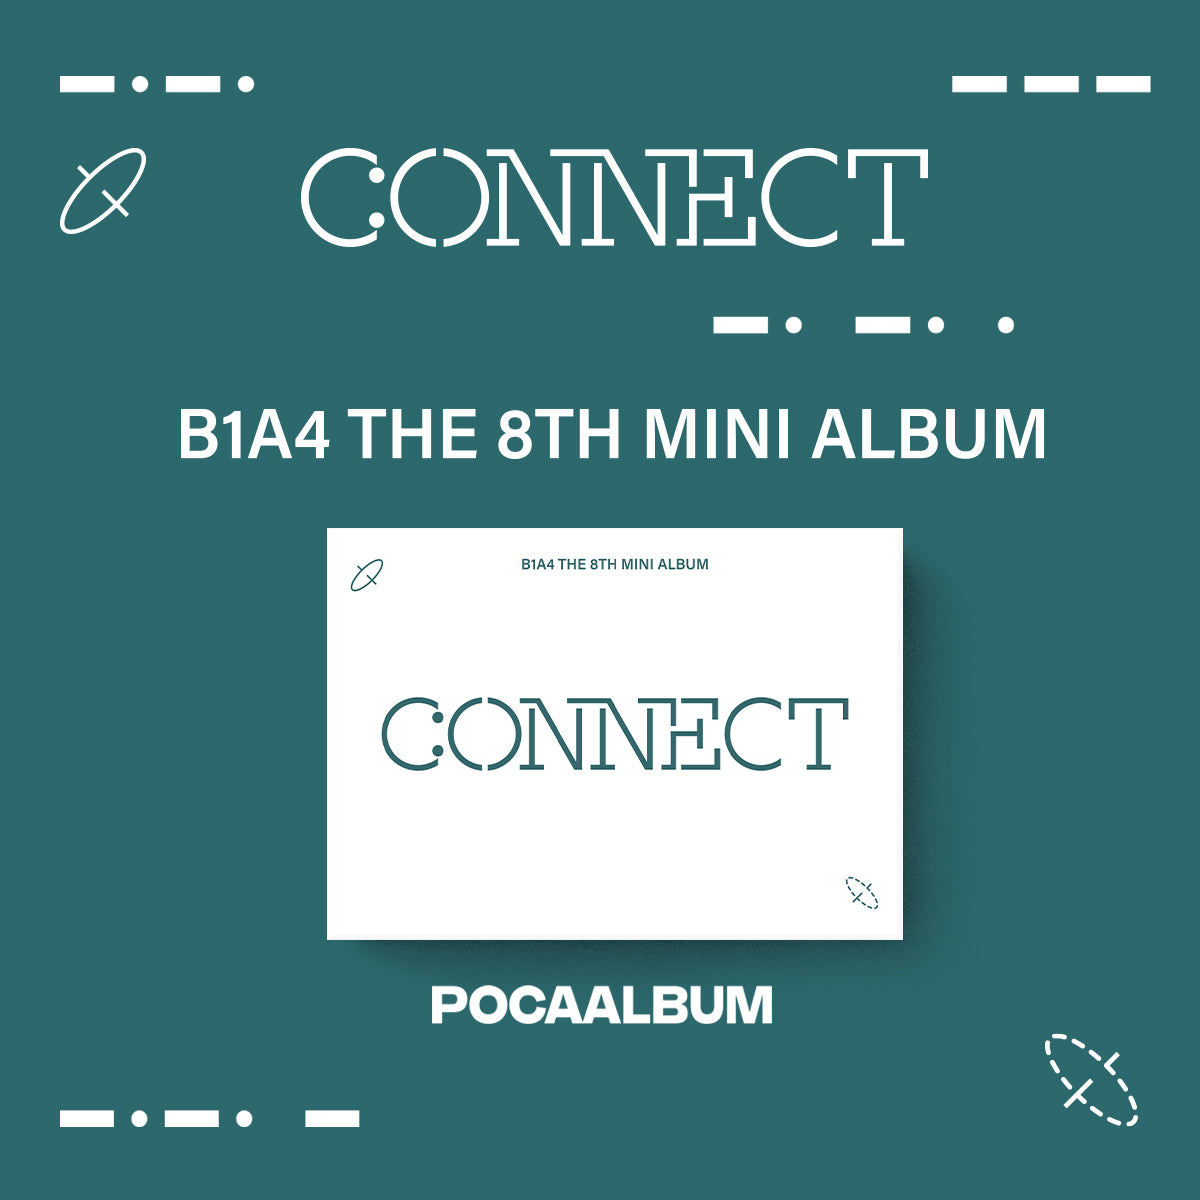 B1A4 - 8th Mini Album CONNECT (POCAALBUM)